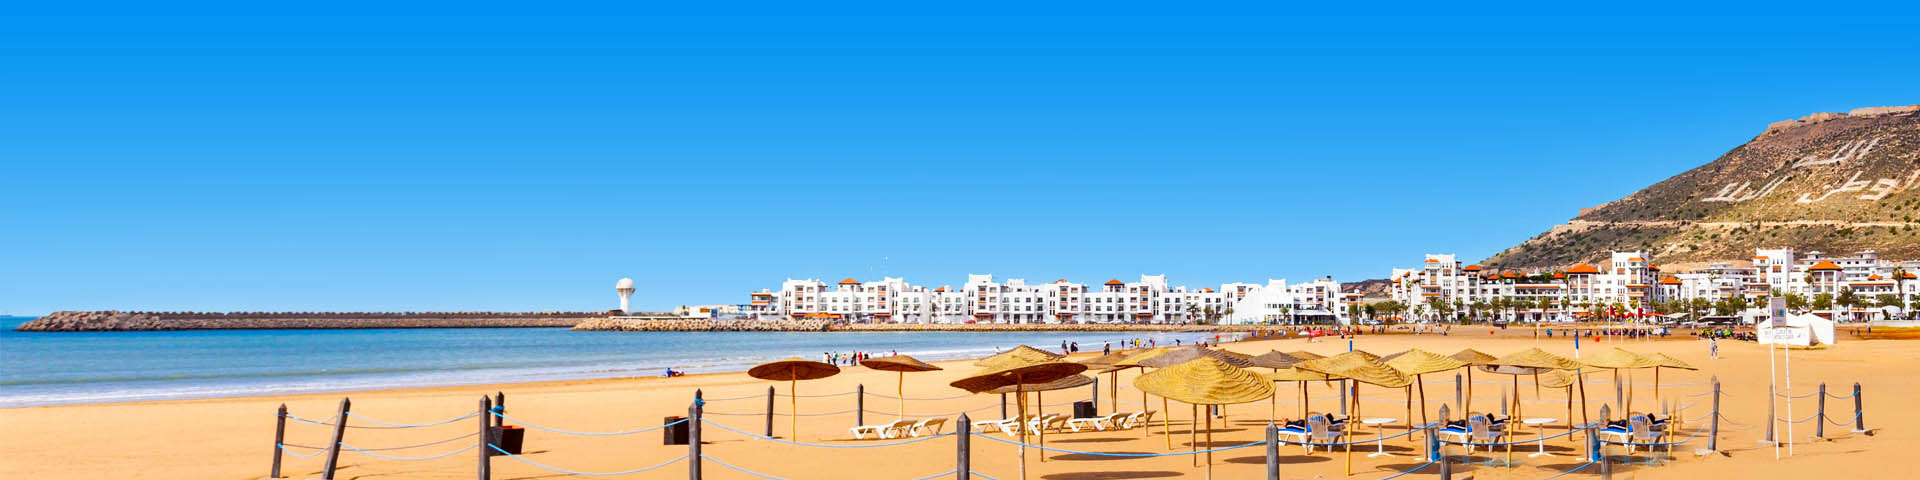 Strand in Marokko